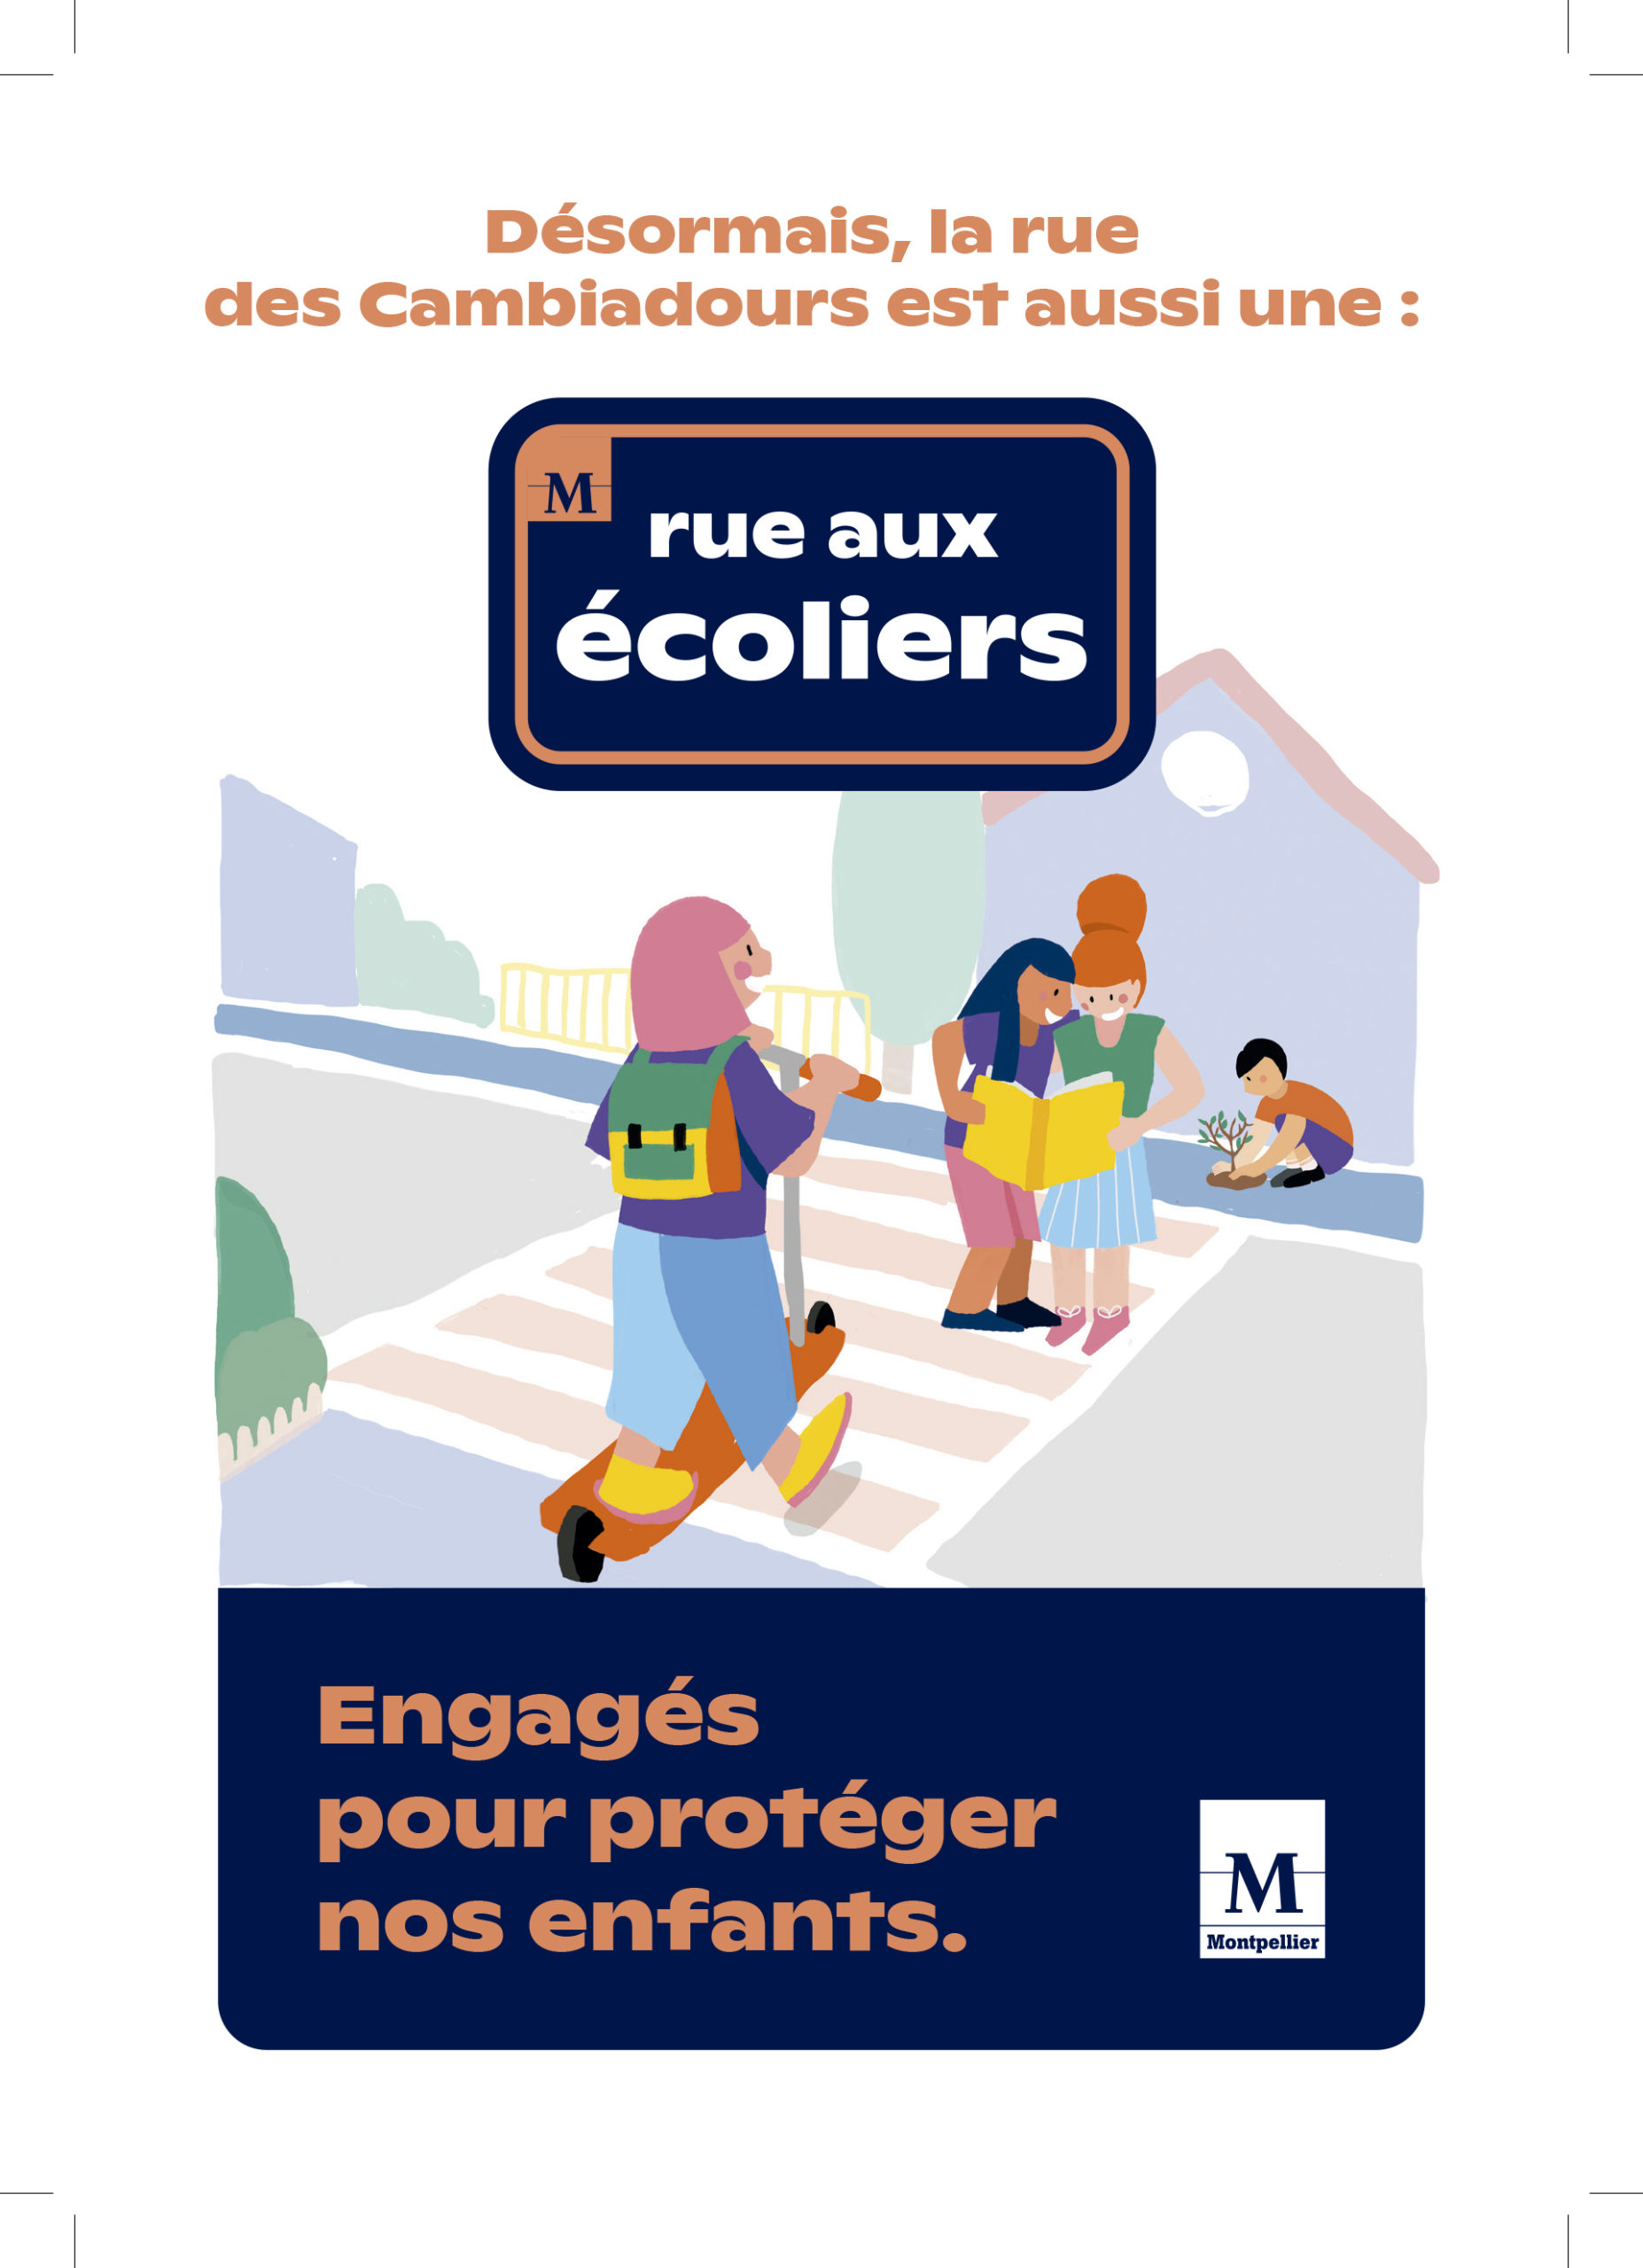 Deux nouvelles « rues aux écoliers » mises en place à Montpellier ce lundi 7 novembre